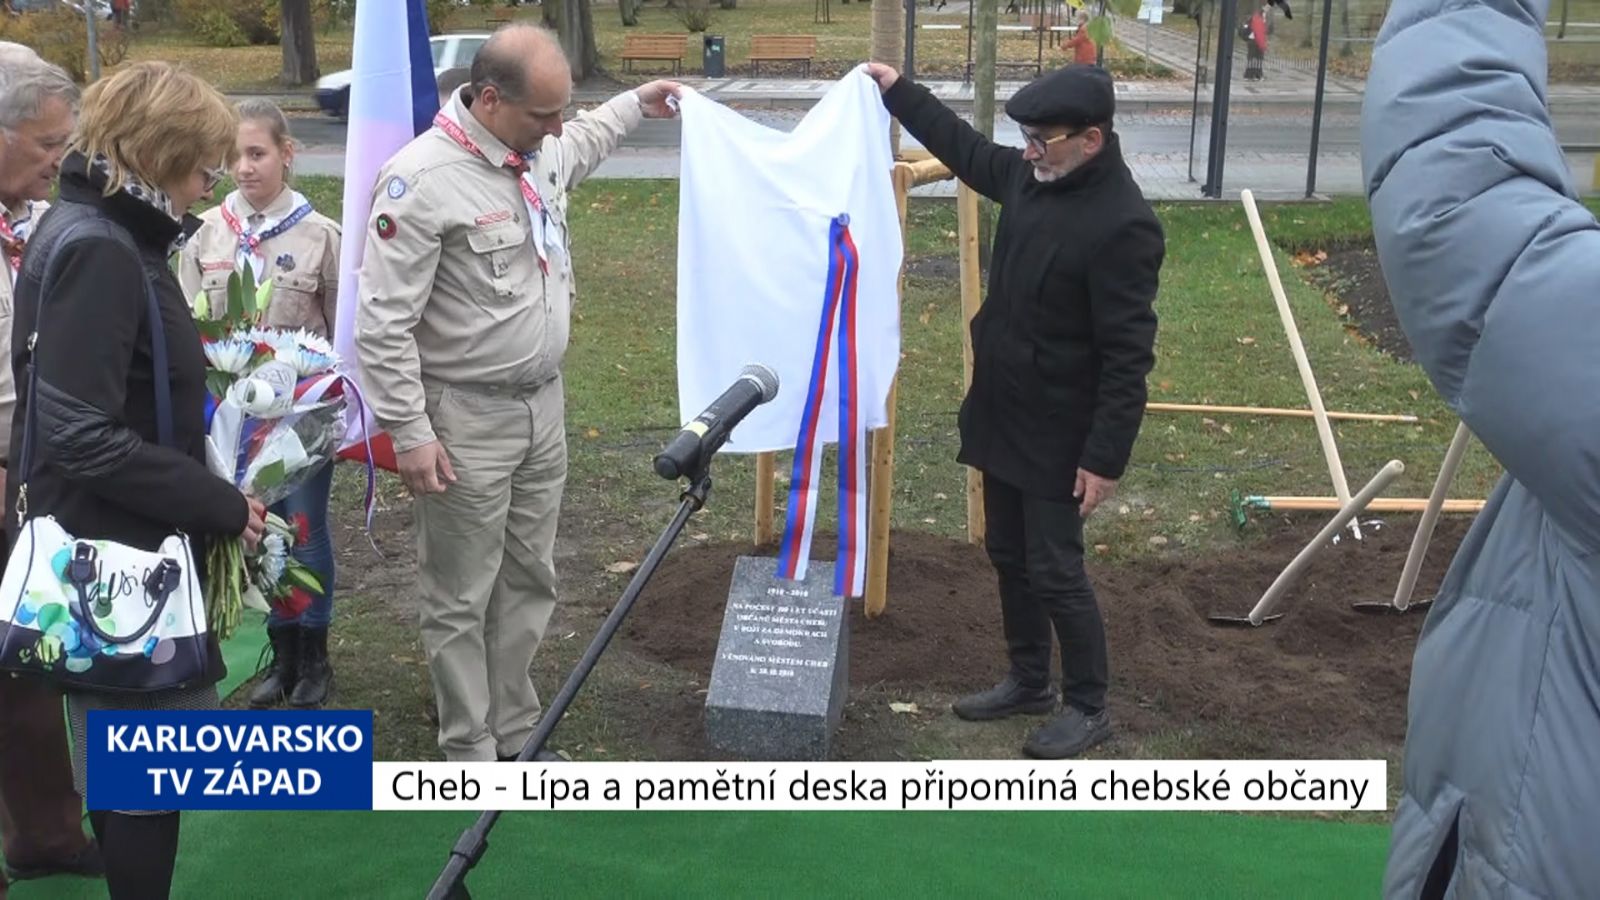 Cheb: Lípa a pamětní deska připomíná chebské občany (TV Západ)